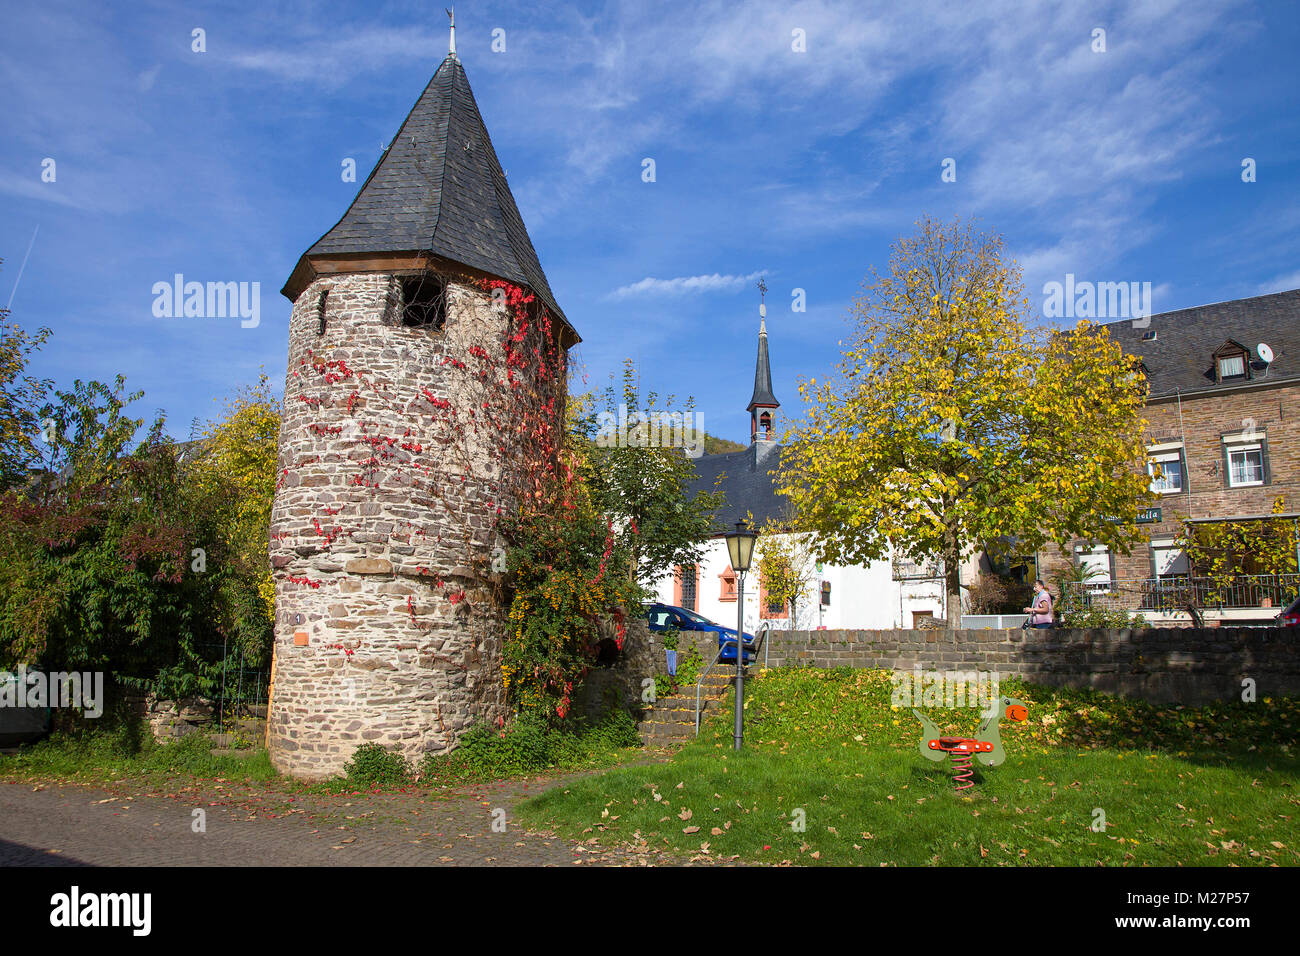 Antica torre di avvistamento medievale con colorato di foglie di vite al Riverside, Ediger-Eller, Mosella, Renania-Palatinato, Germania, Europa Foto Stock